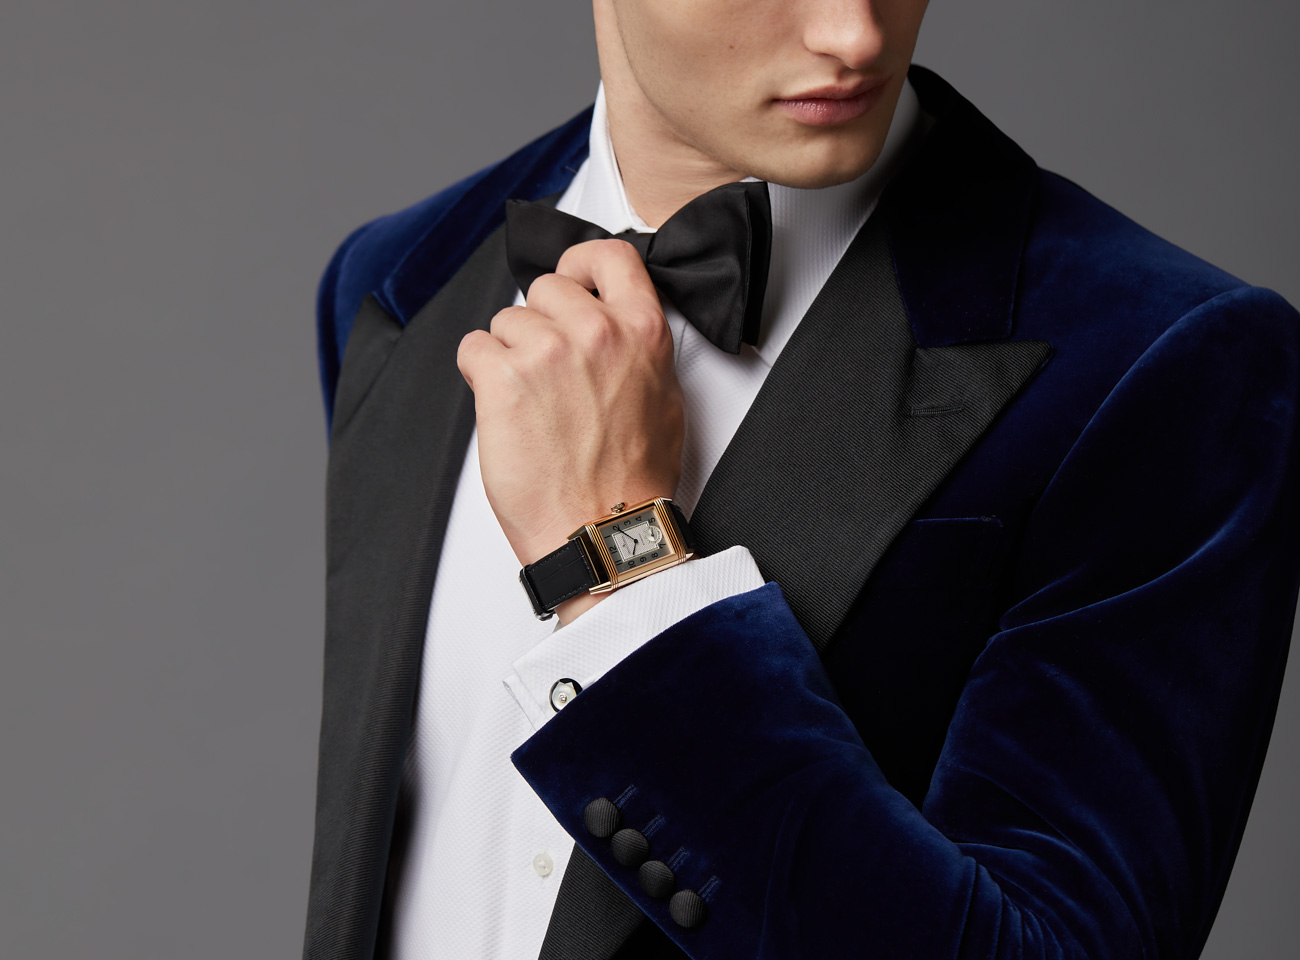 best tuxedo watches